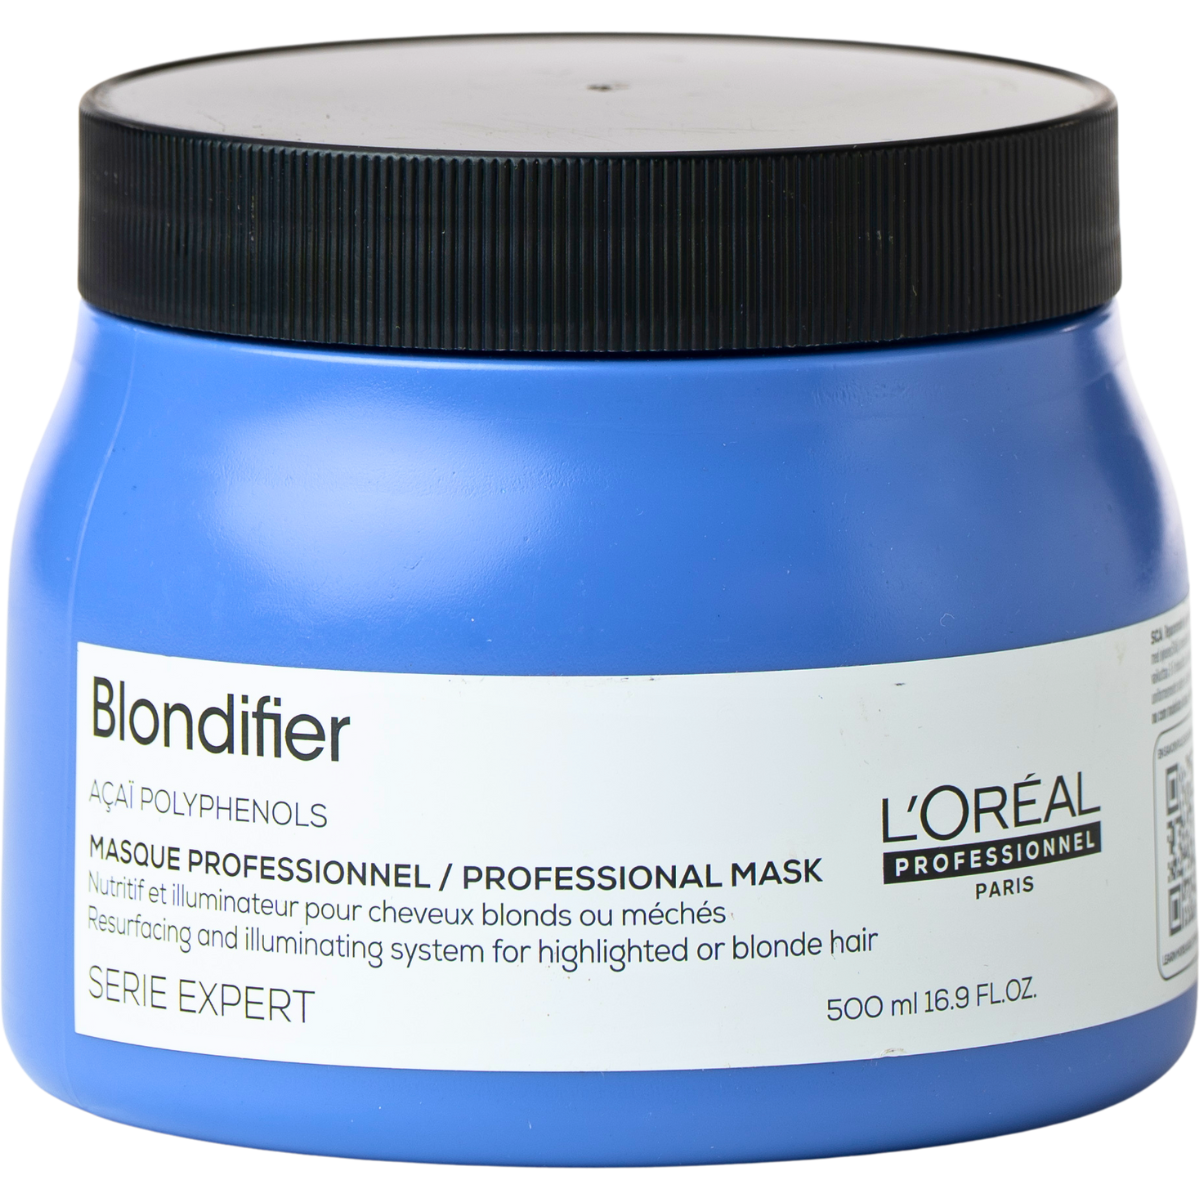 מסכה לשיער לכל גווני הבלונד S`erie Expert Blondifier סרי אקספרט בלונדיפייר לוריאל 500 מ"ל